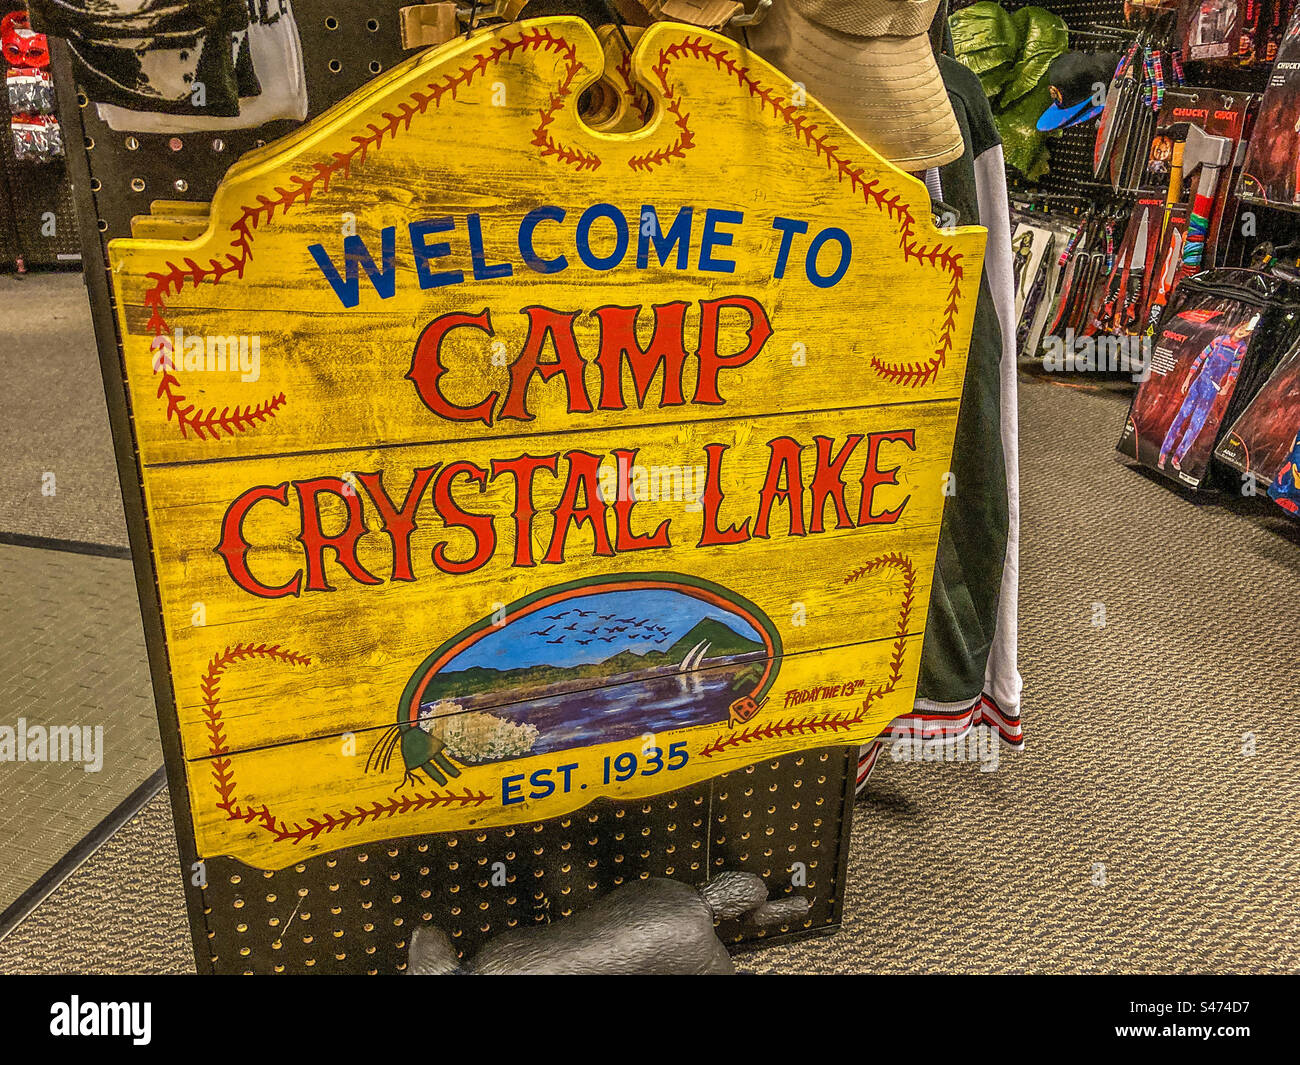 Bienvenido a Camp Crystal Lake Foto de stock